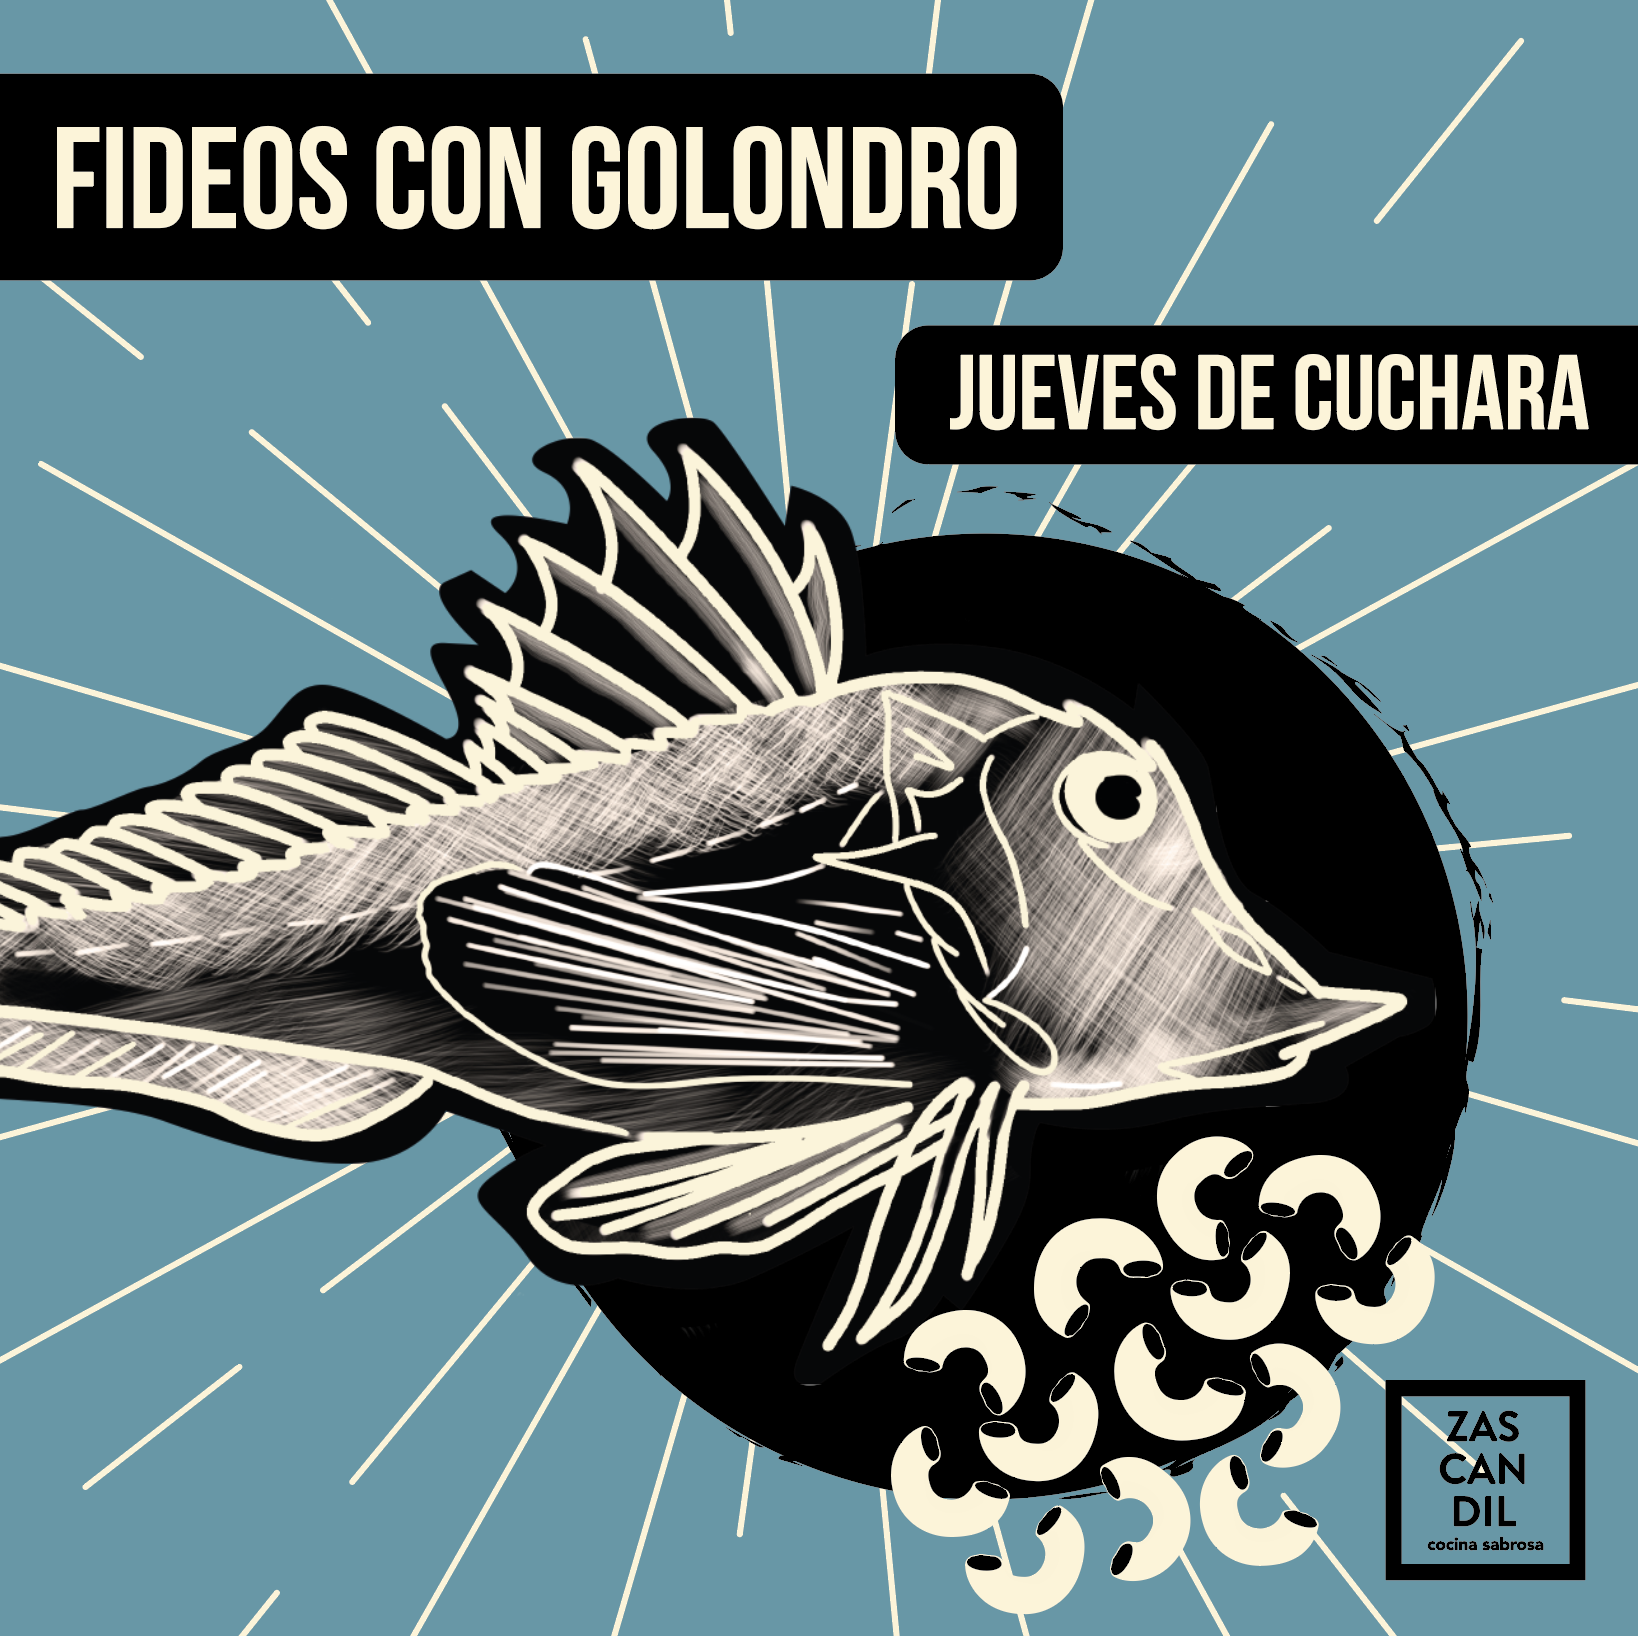 JUEVES DE CUCHARA · FIDEOS CON GOLONDRO